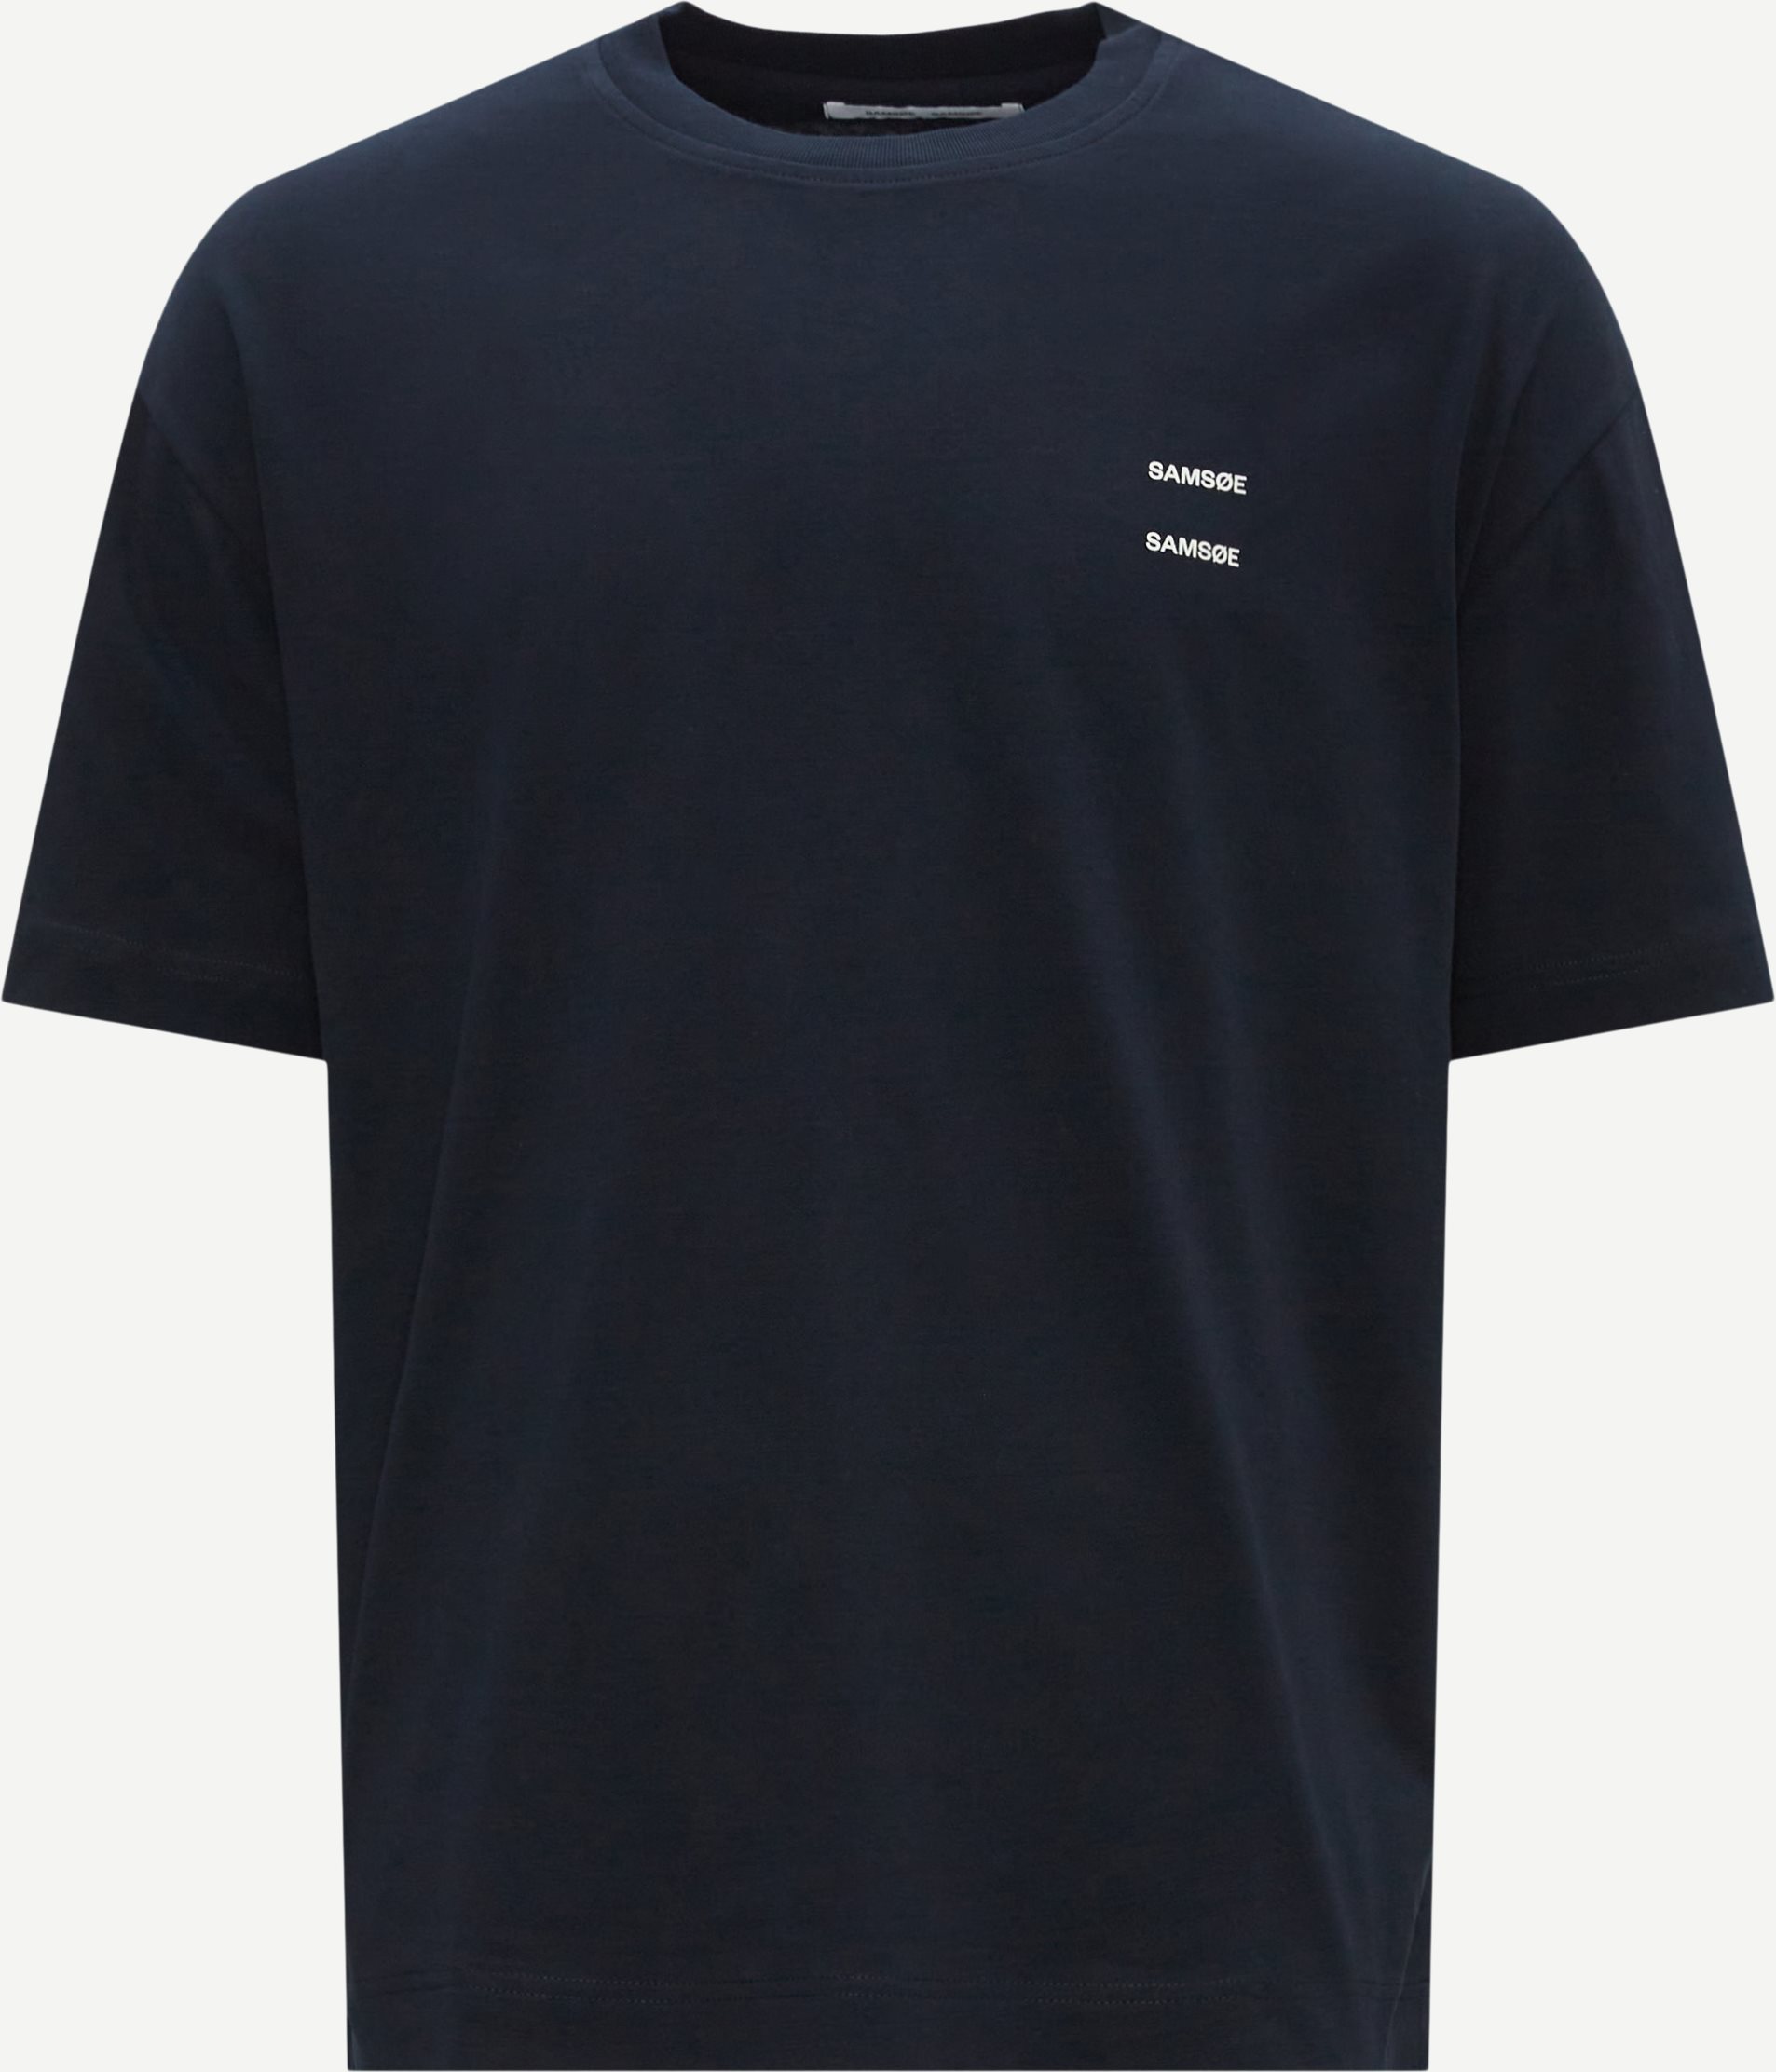 Samsøe Samsøe T-shirts JOEL T-SHIRT 11415 Blå